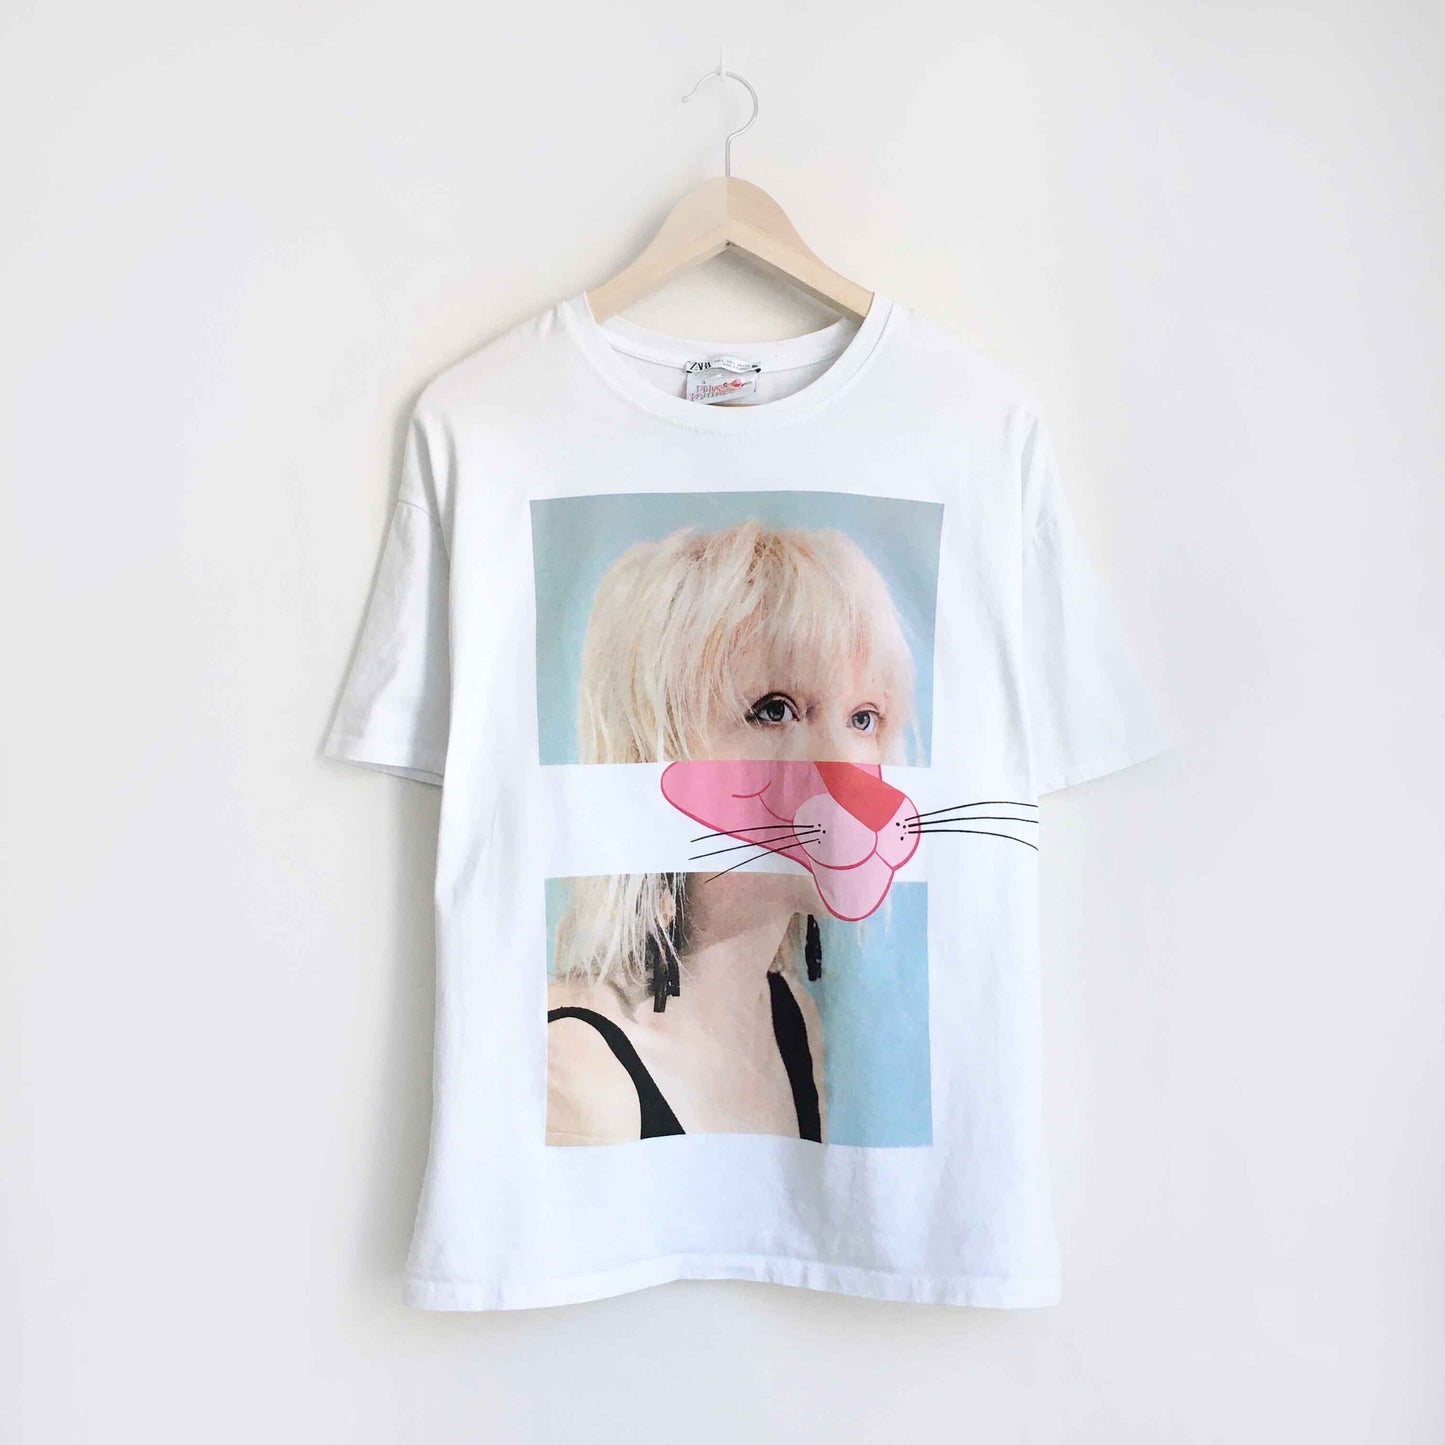 Zara x Pink Panther organic cotton t-shirt - size Large